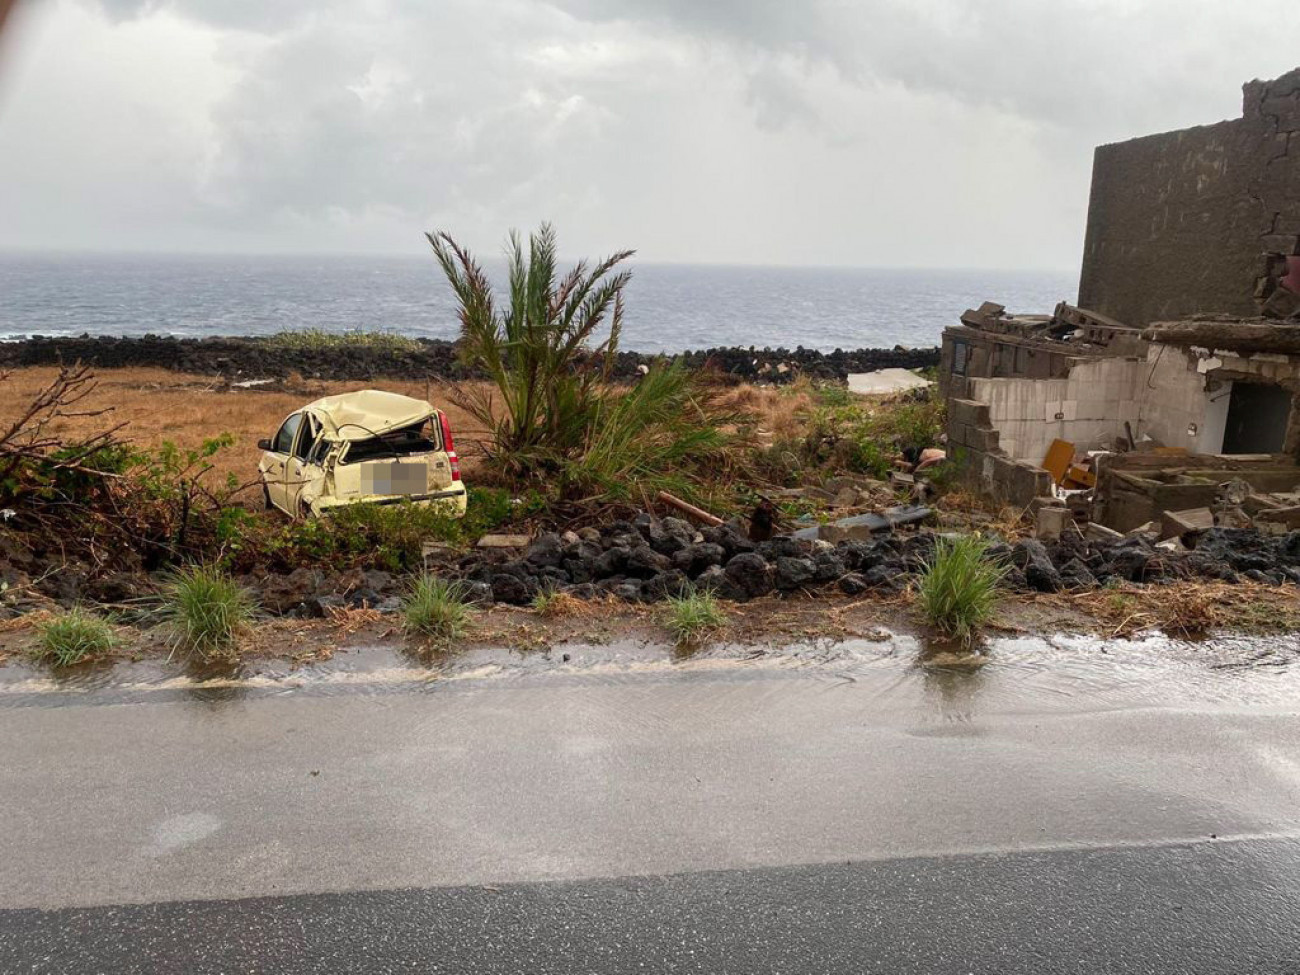 Pantelleria szigete, 2021. szeptember 10.
Az olasz polgári védelem sajtószolgálata által közreadott kép egy tornádó pusztításáról a Szicília közelében fekvő Pantelleria szigetén 2021. szeptember 10-én. A mentőalakulatok tagjainak közlése szerint két személy meghalt, kilencen megsérültek és néhány embert még keresnek.
MTI/EPA/ANSA/Olasz polgári védelem sajtószolgálata